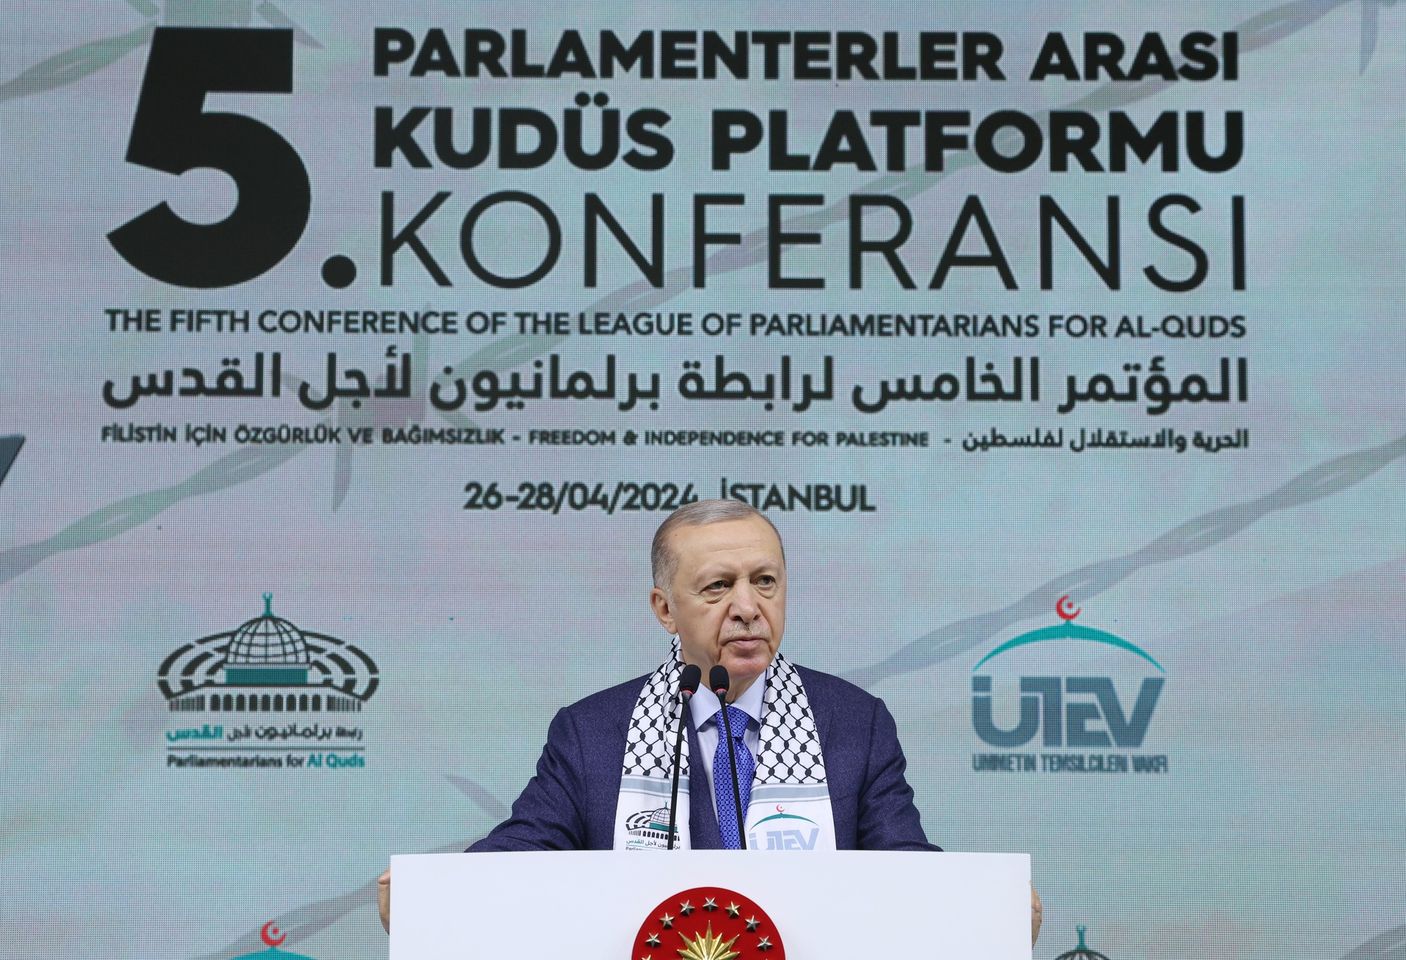 Cumhurbaşkanı Erdoğan'ın Uluslararası Parlamenterler Arası Kudüs Platformu Toplantısına Katılımı